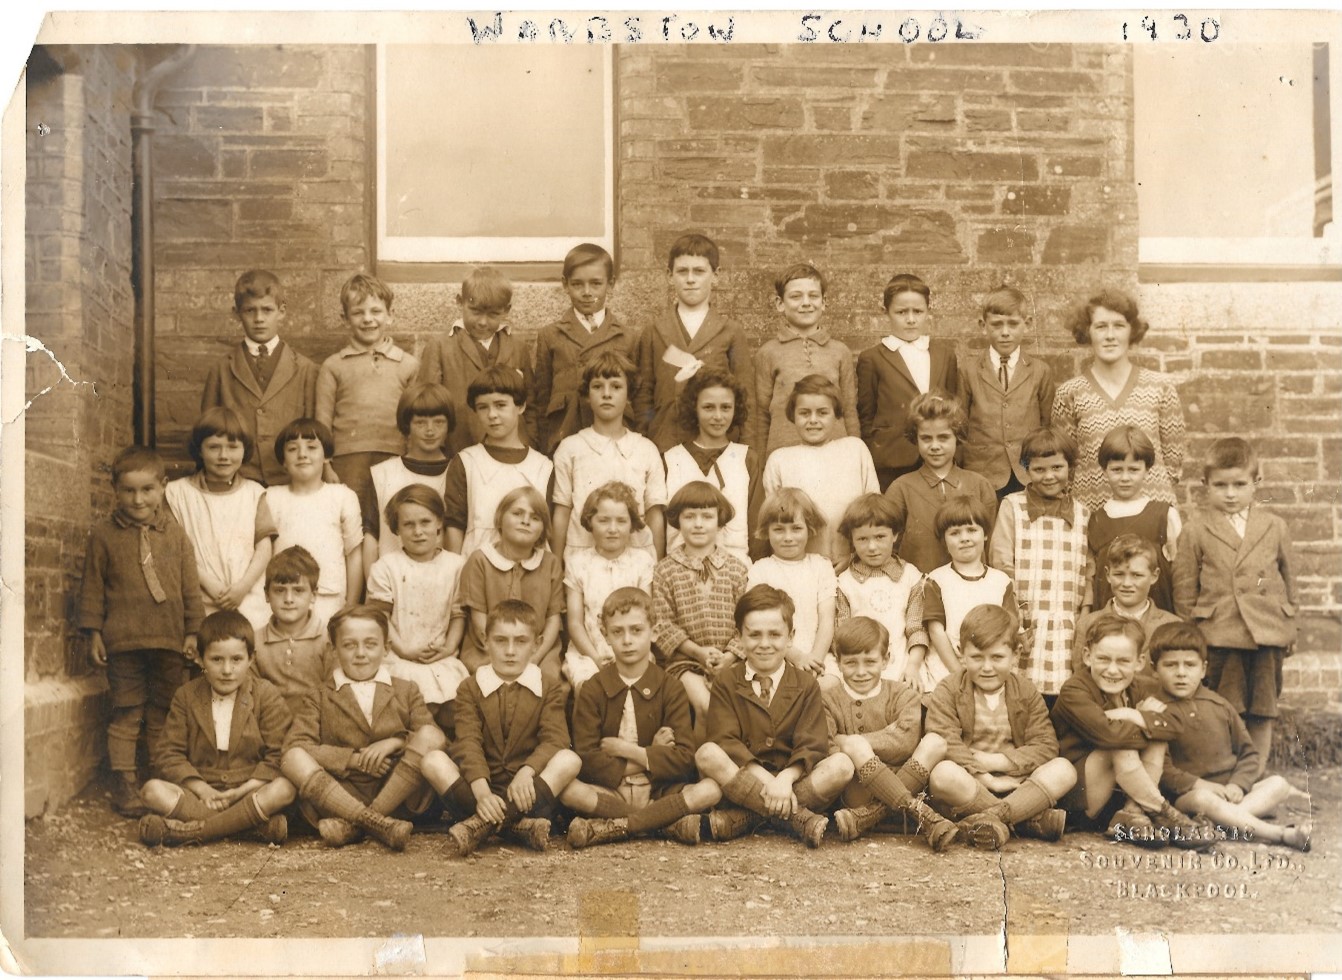 Warbstow school class 1930